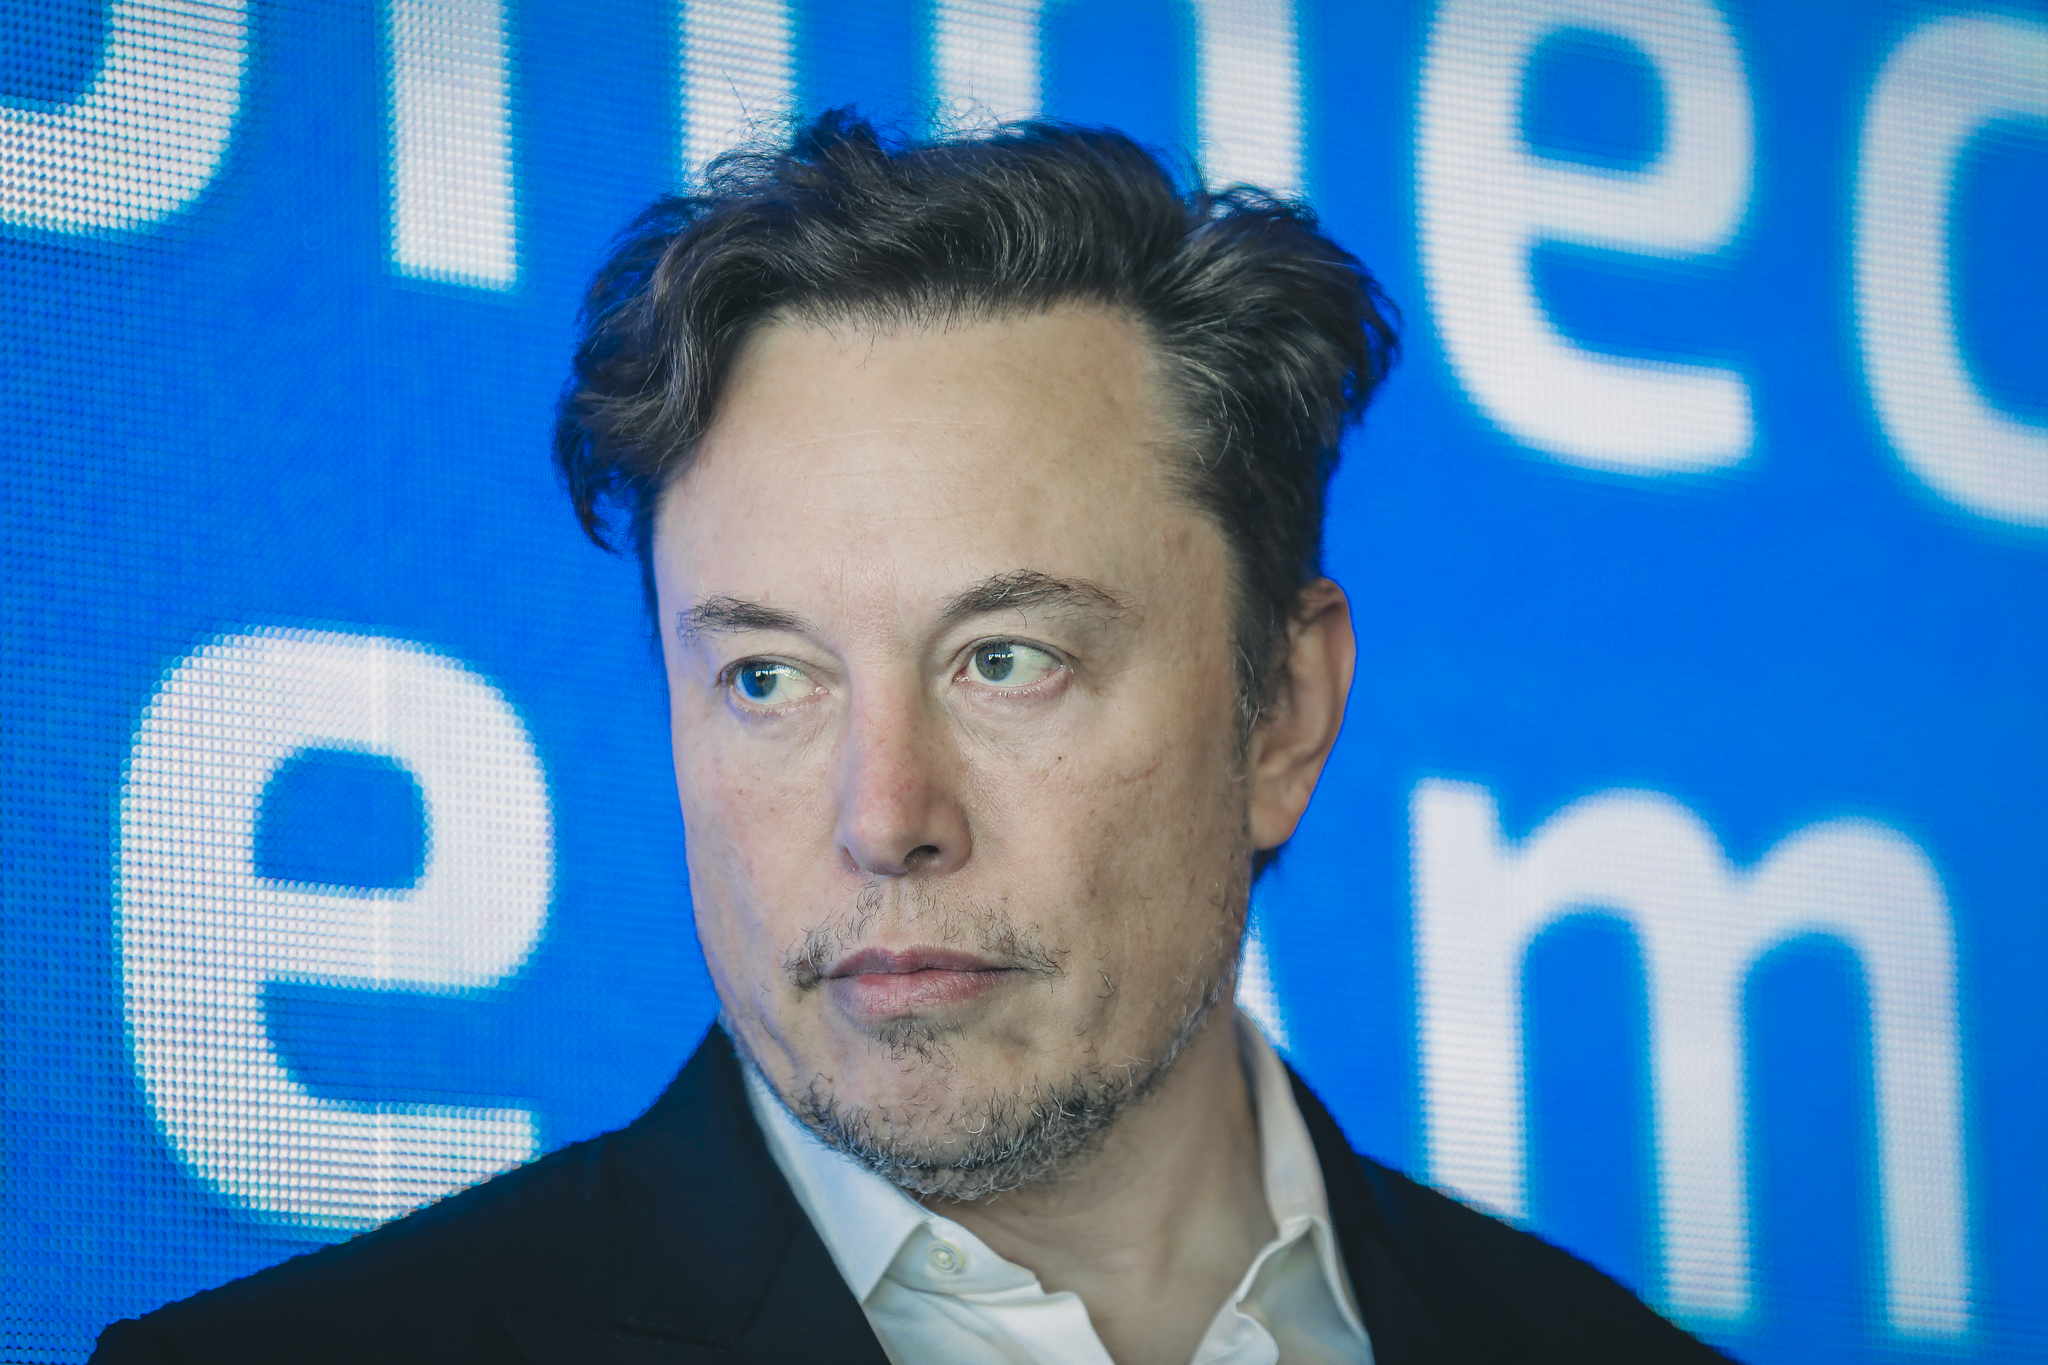 Un compte de suivi de jet privé a déclenché l’offre Twitter d’Elon Musk, selon un nouveau livre